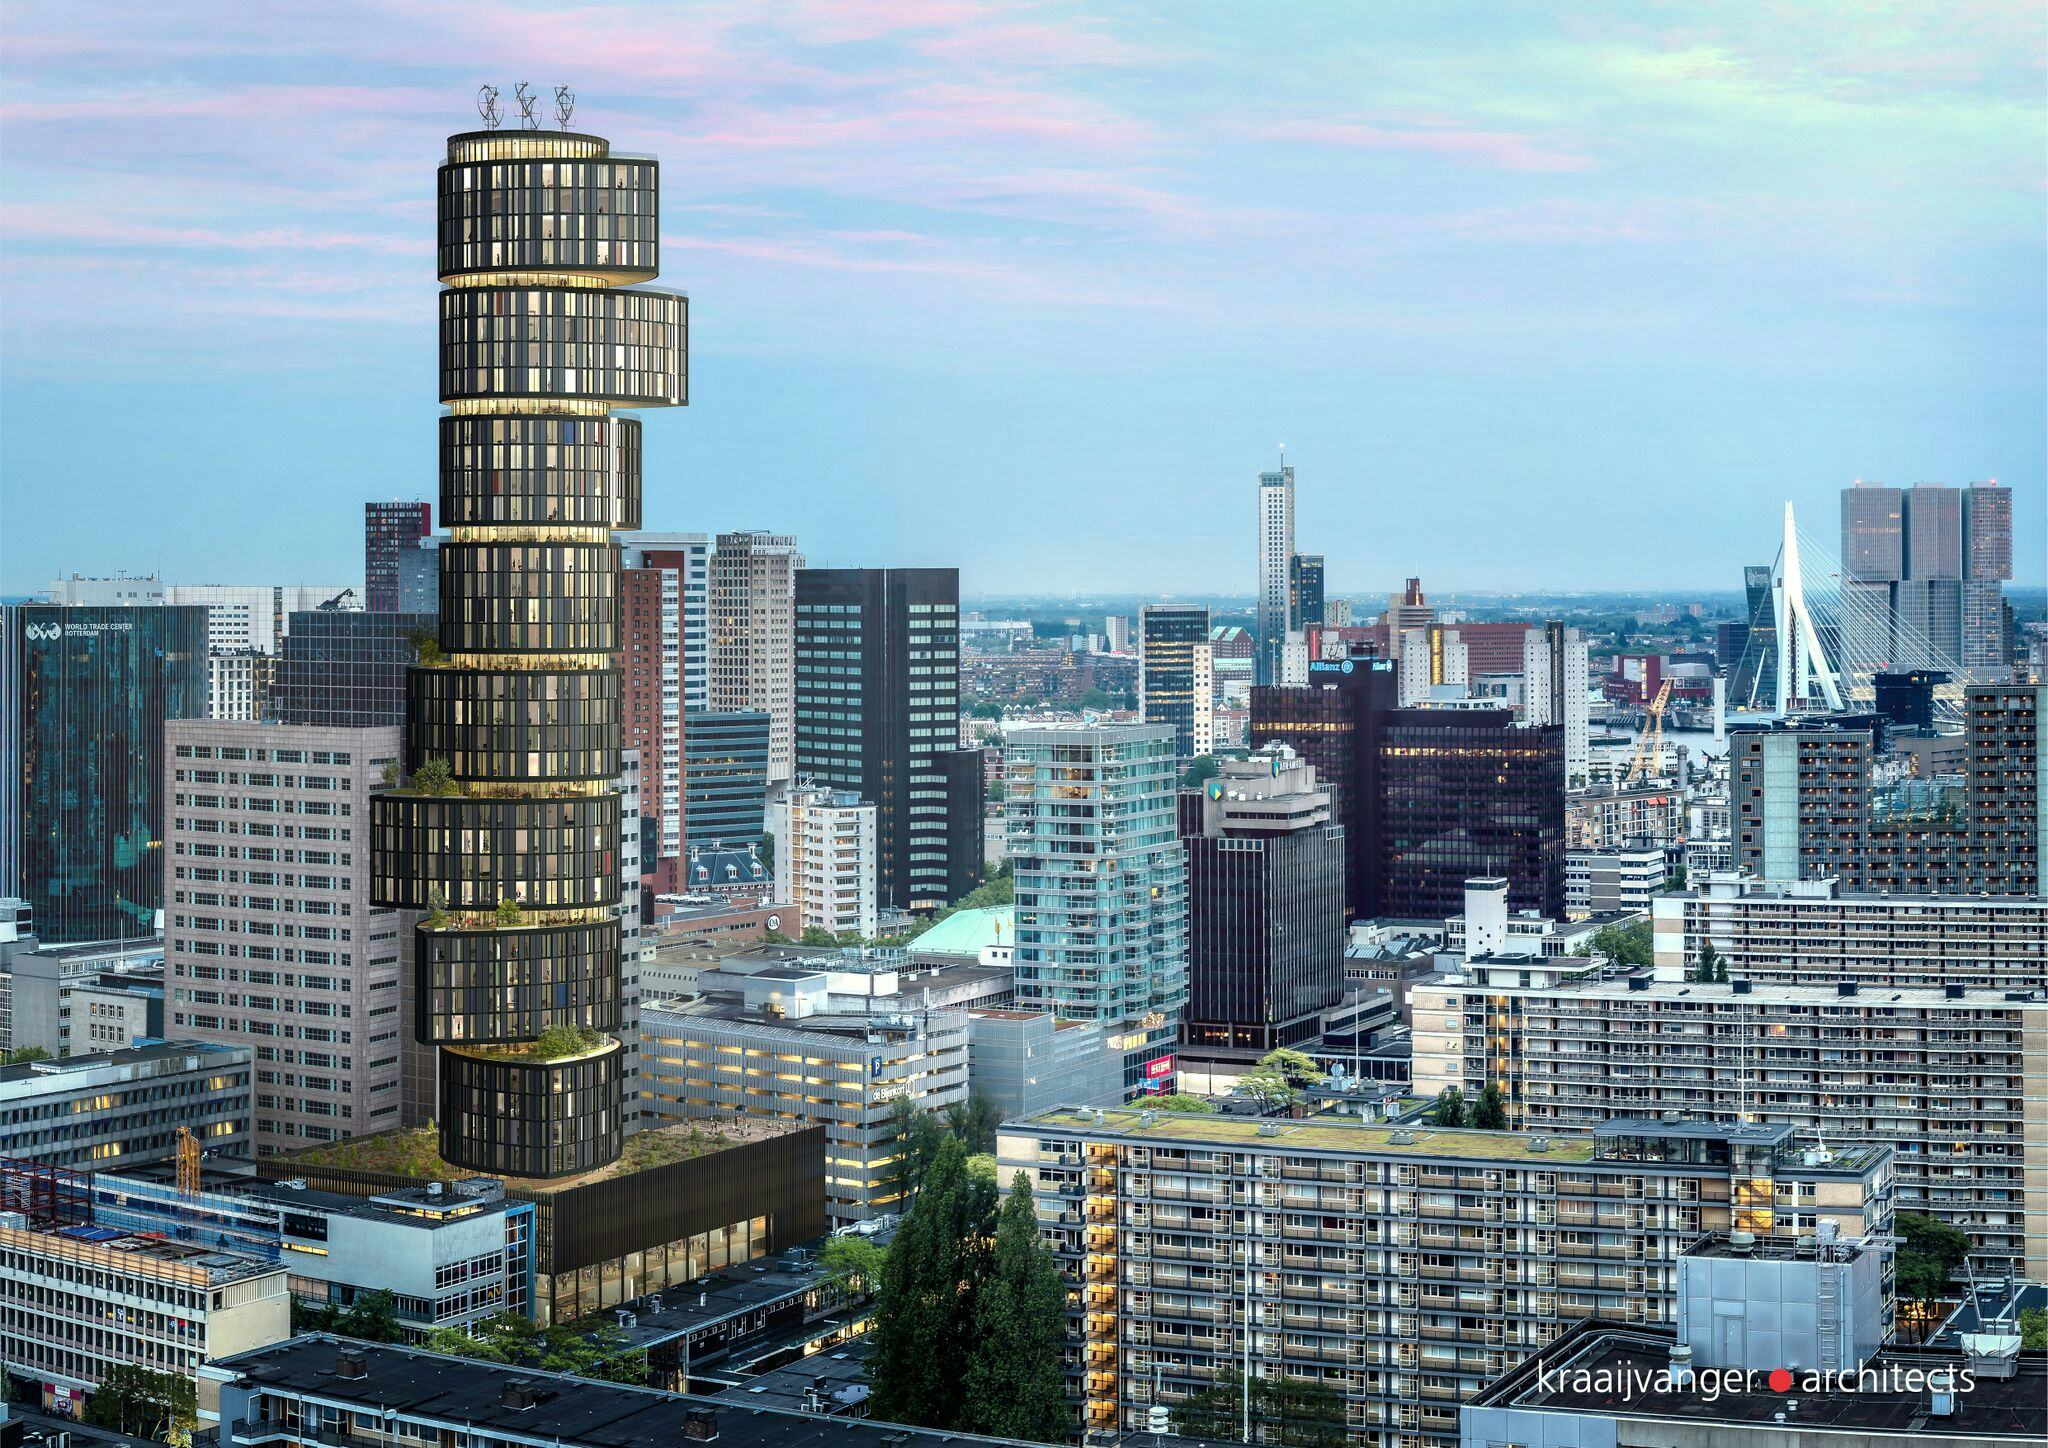 Het concept voor de 360° gaat terug op het al bestaande Rotterdam Building van Kraaijvanger Architects